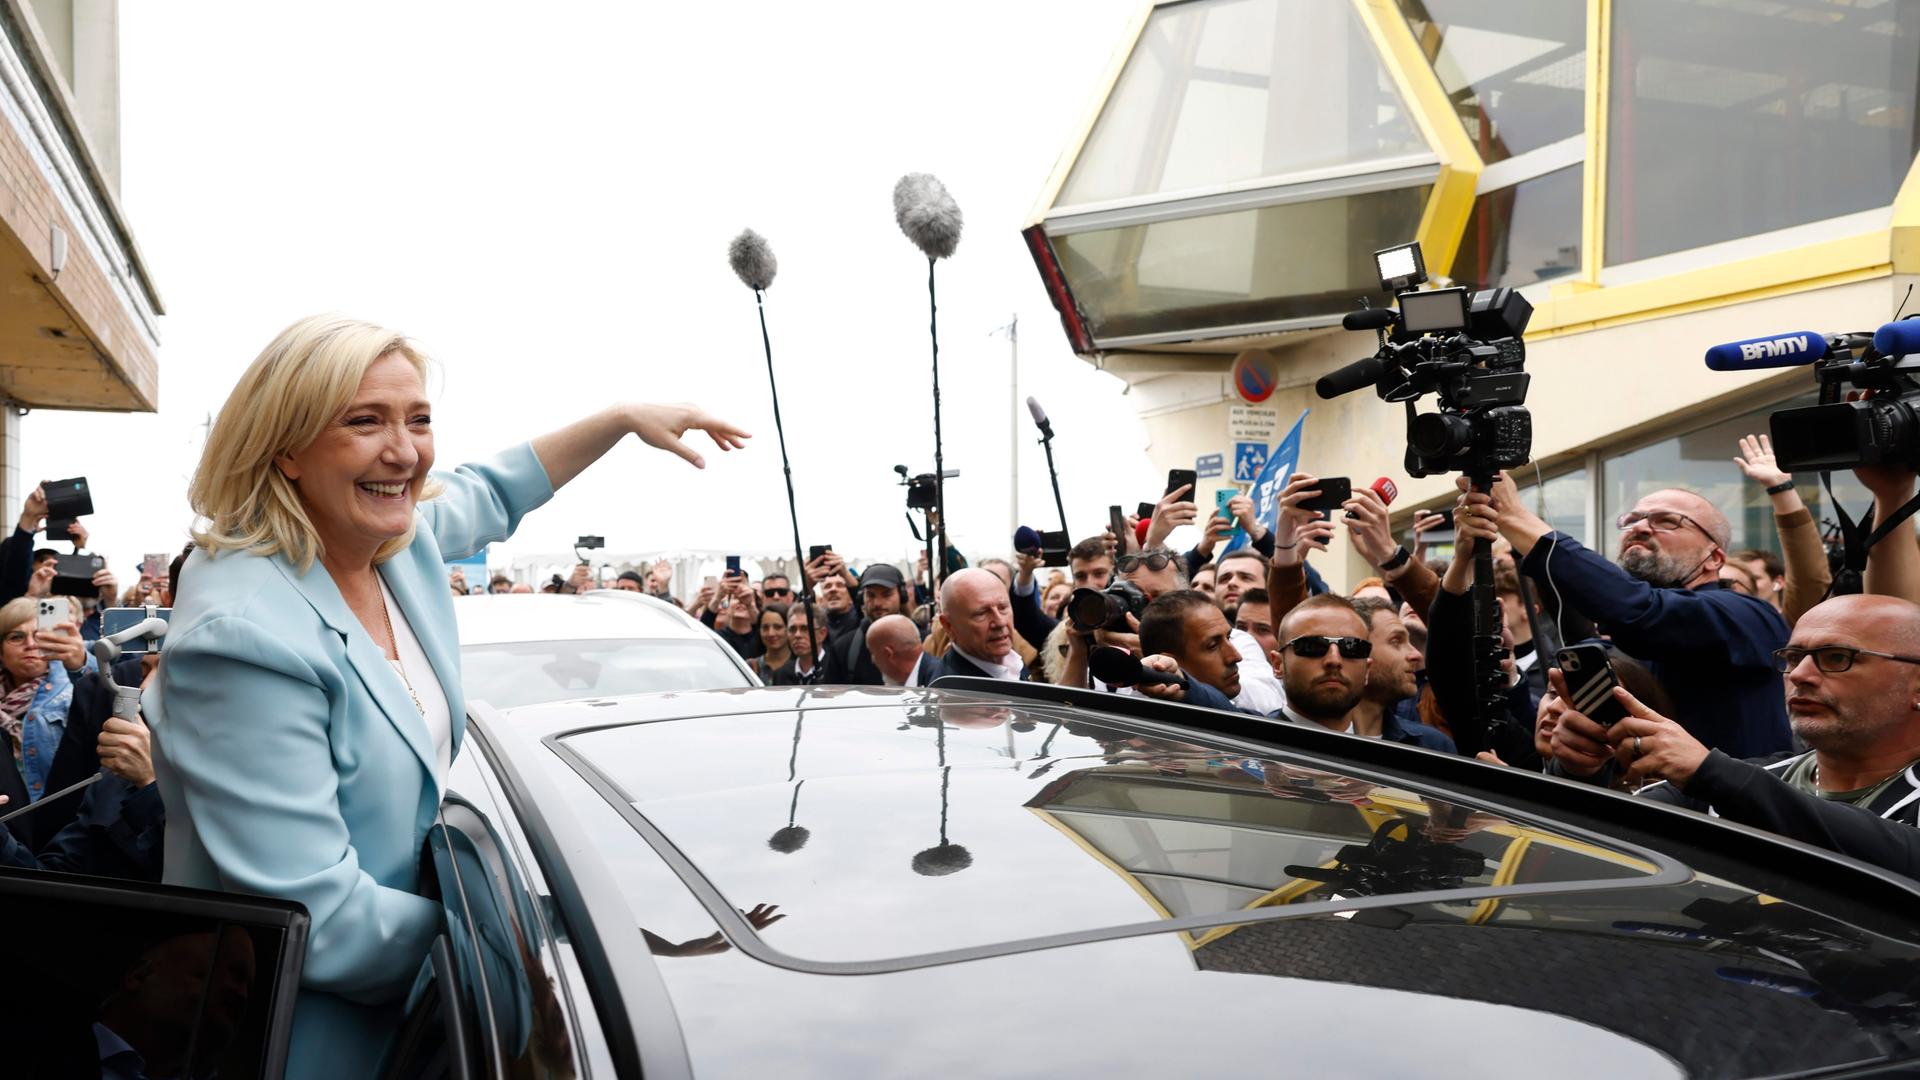 Marine Le Pen steht lachend in einer Menschenmenge, umgeben auch von zahlreichen Journalisten